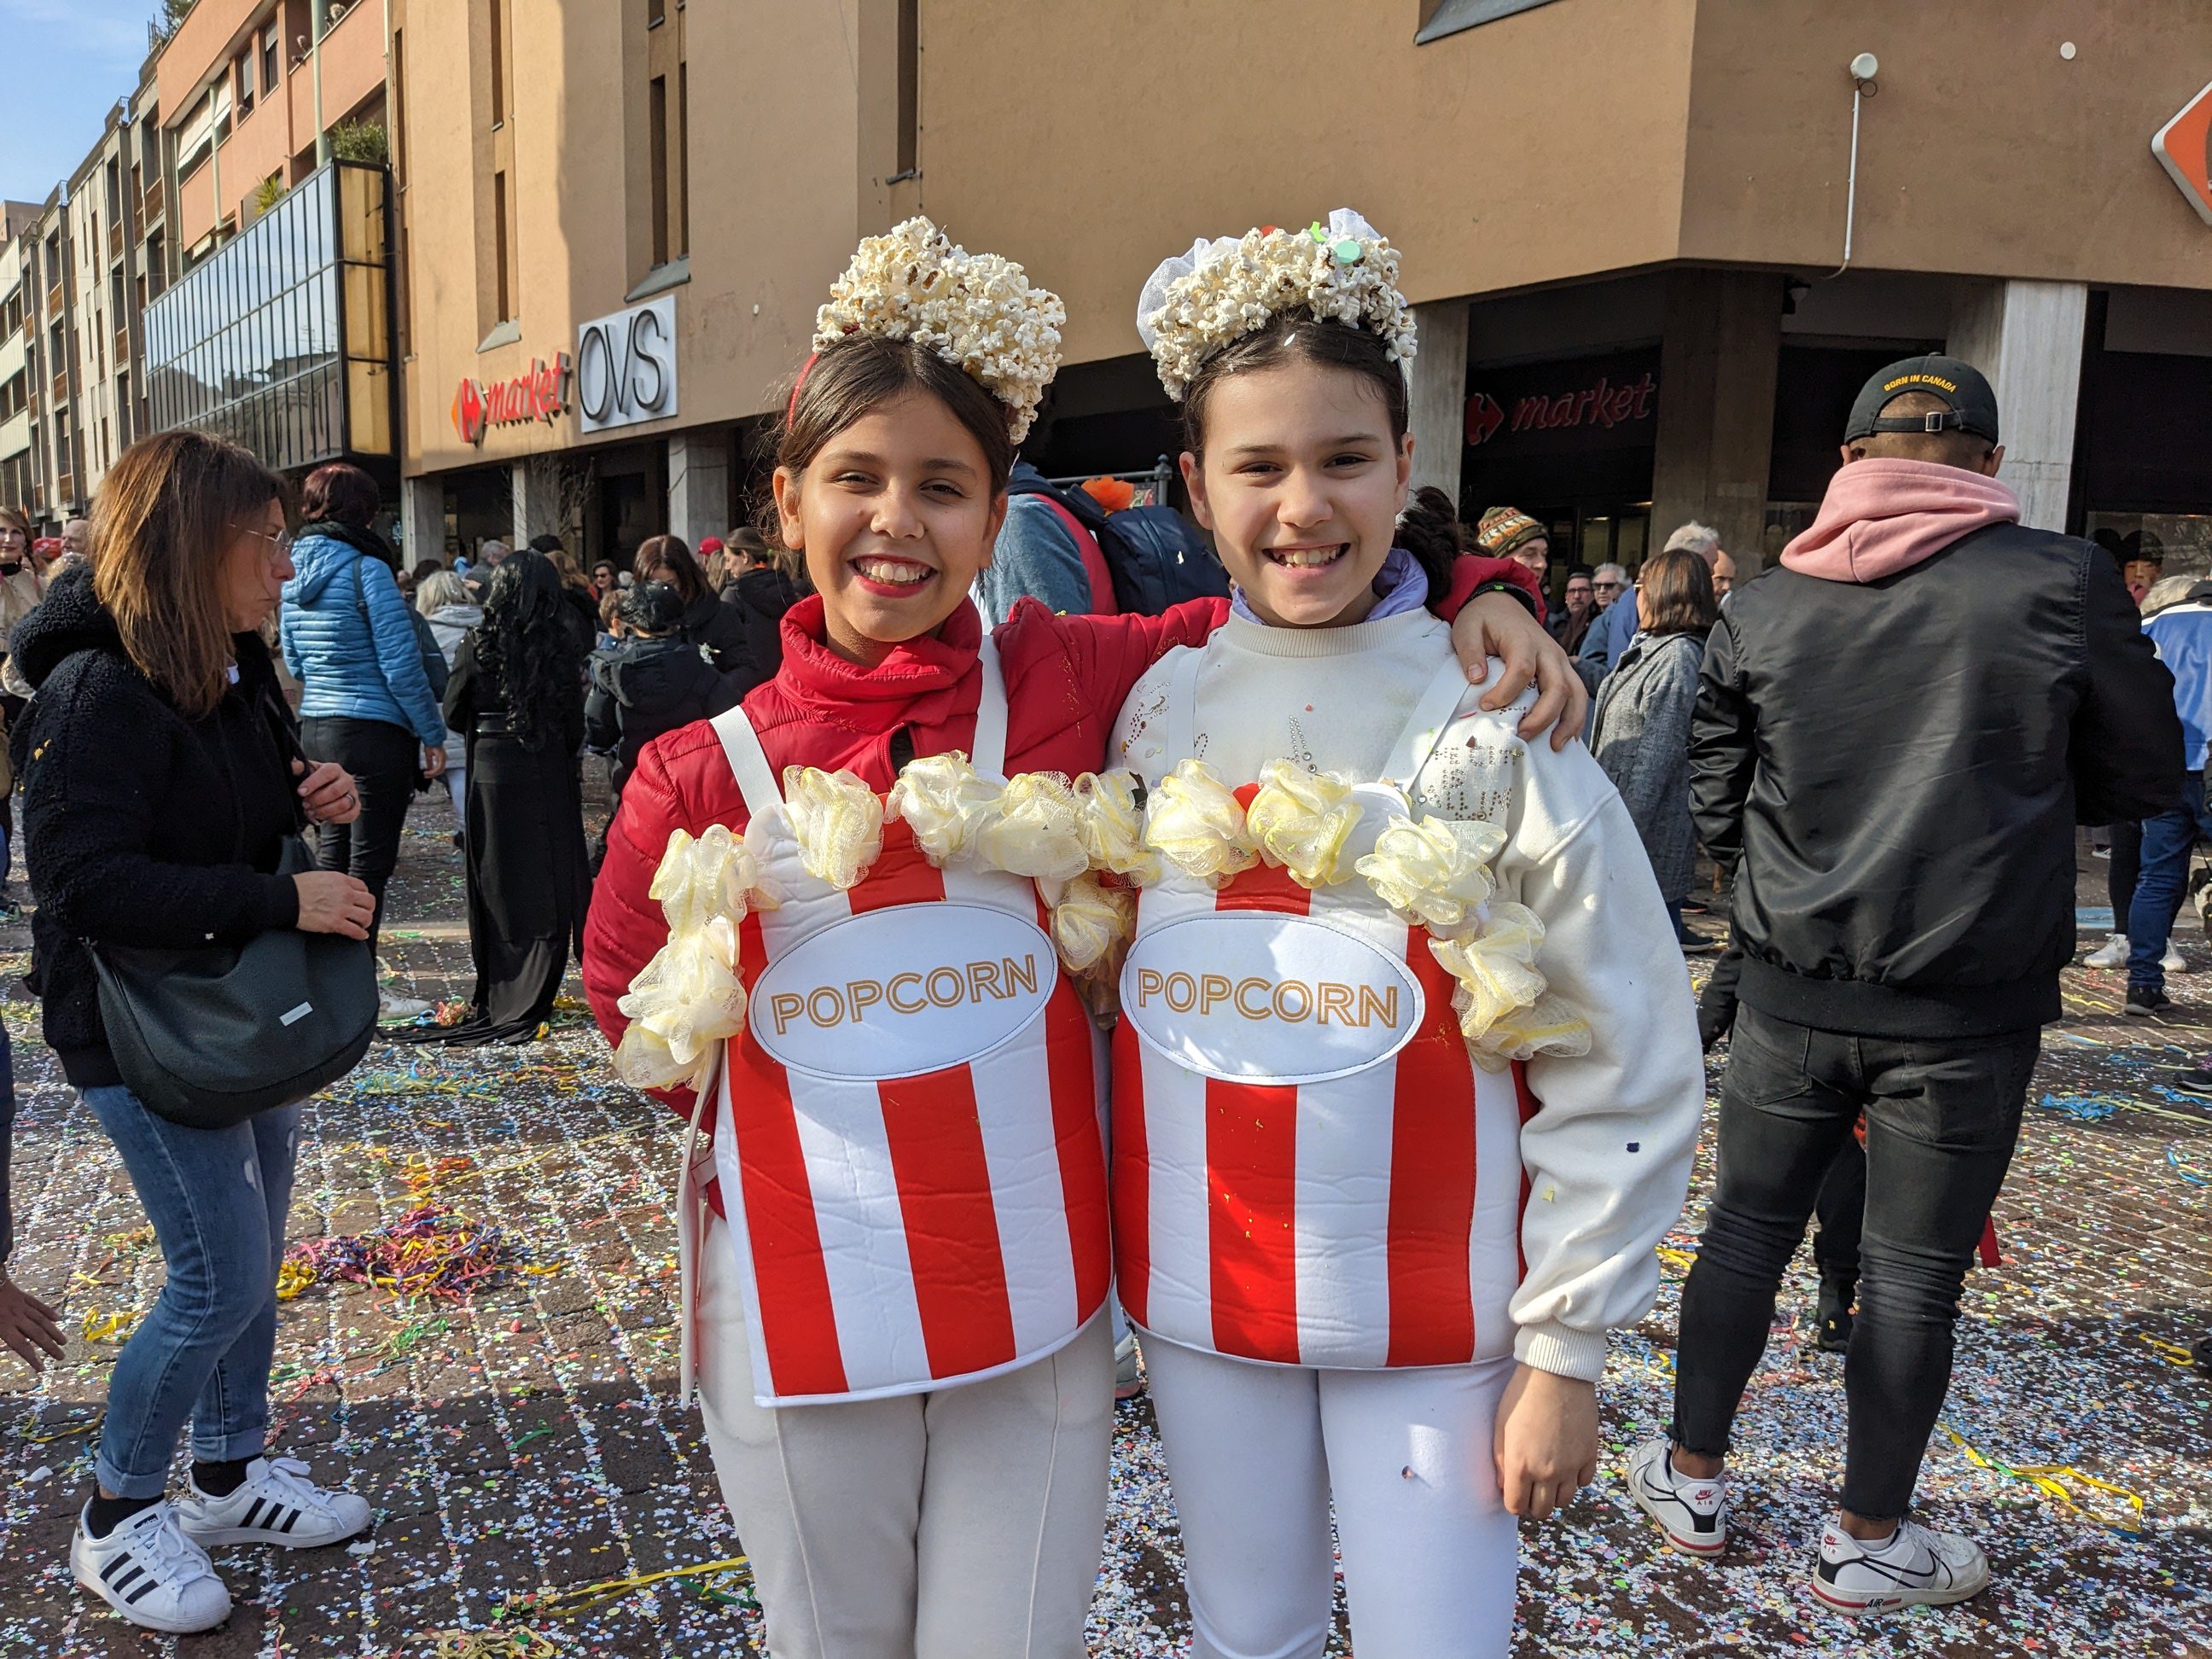 Carnevale a Saronno, dalle ragazze pop corn all’F24 umano: ecco le maschere più originali